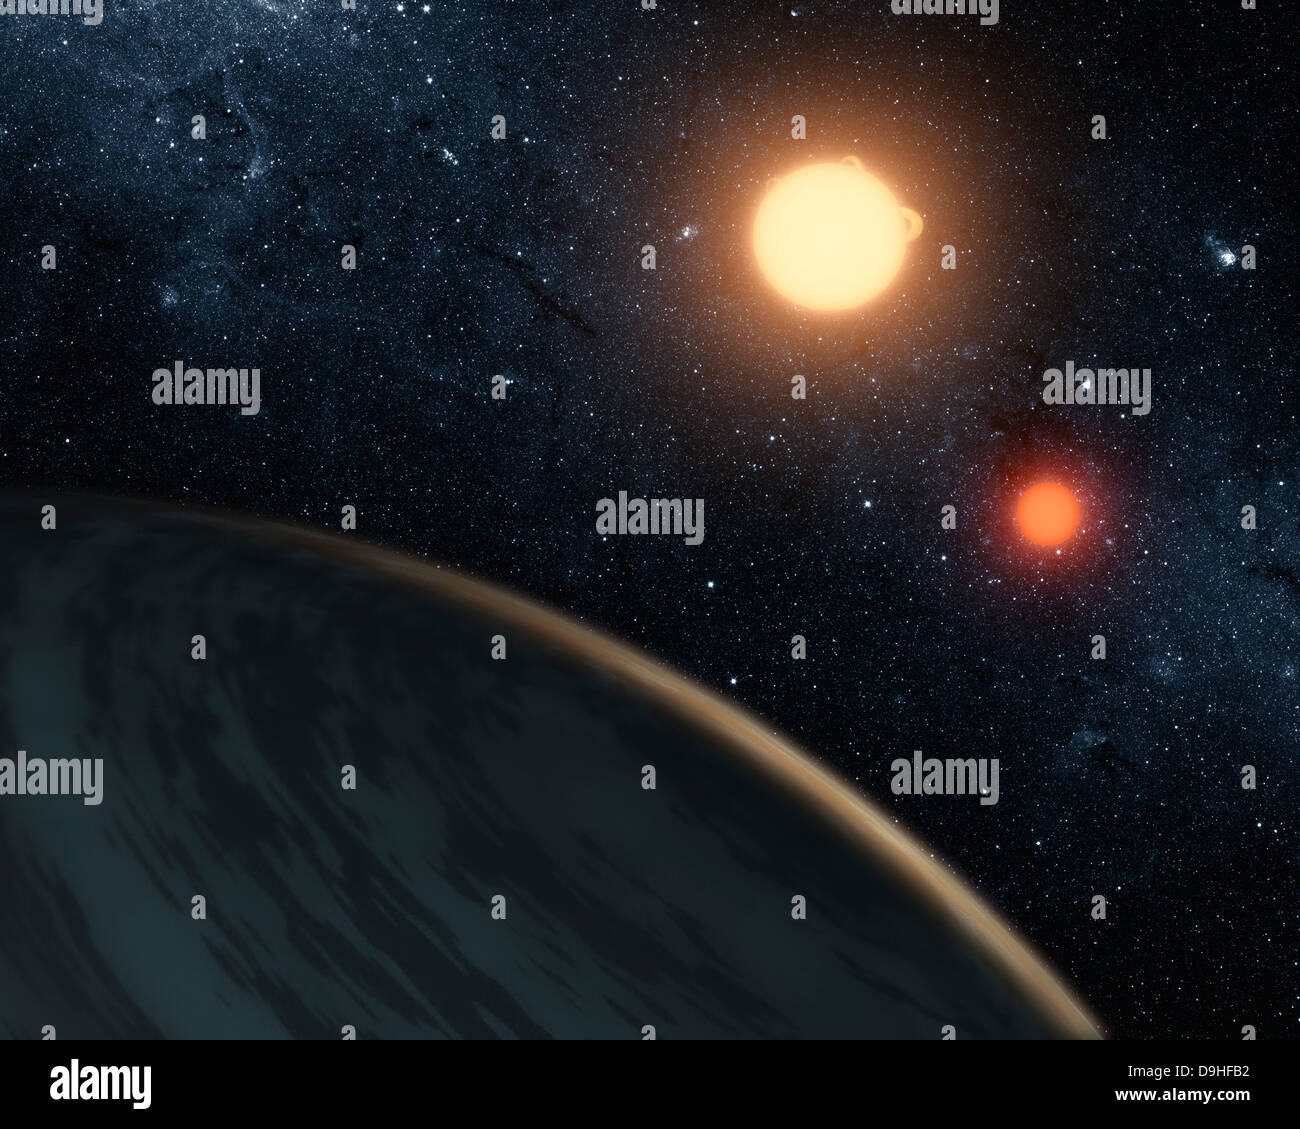 Künstlers Konzept zur Veranschaulichung Kepler-16 b. Stockfoto